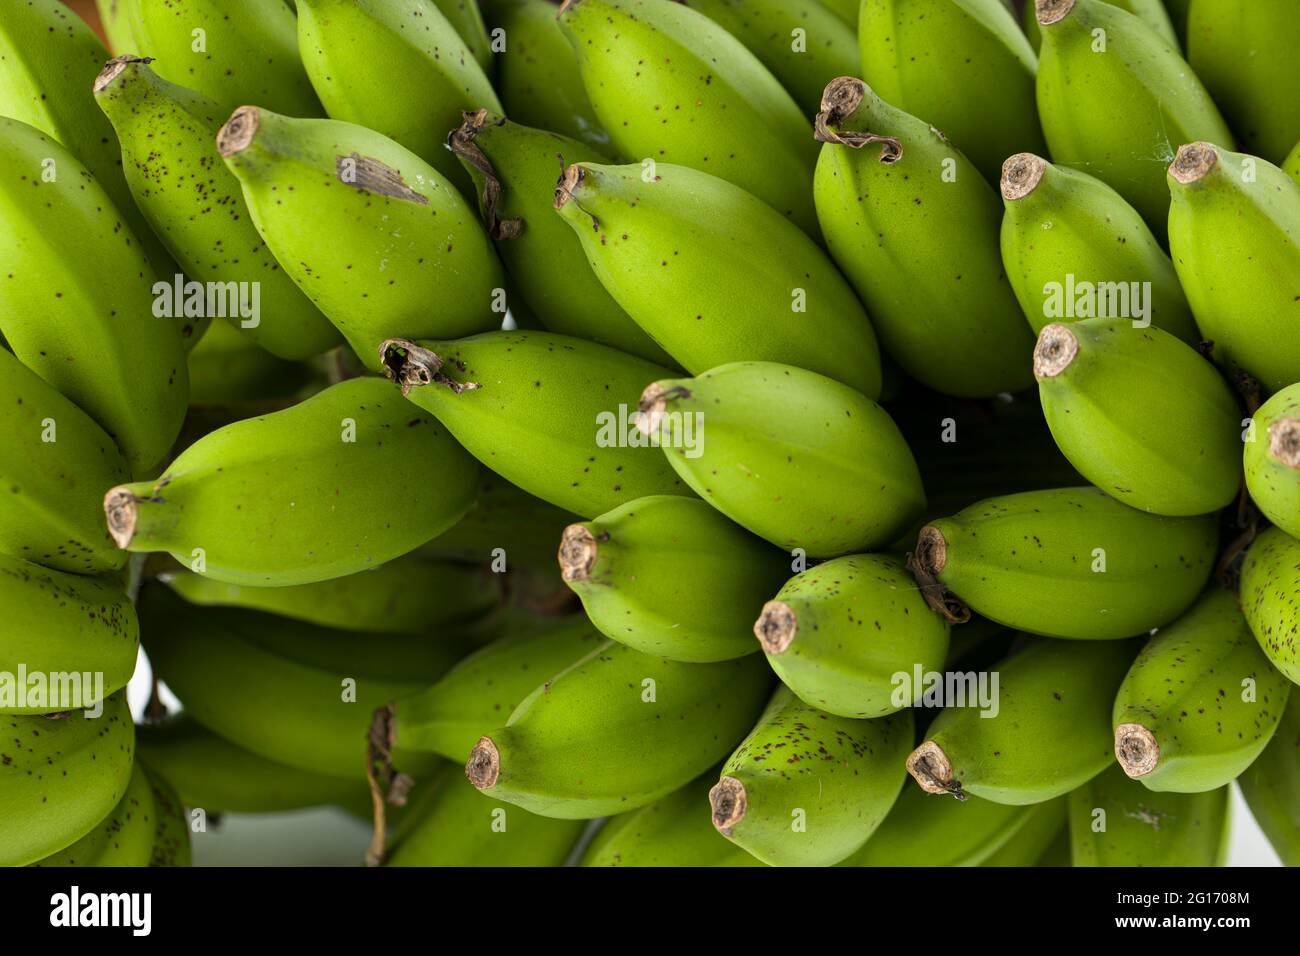 Mazzo di banana grezza o banana verde posto su una superficie bianca con fondo grigio testurizzato, primo piano Foto Stock